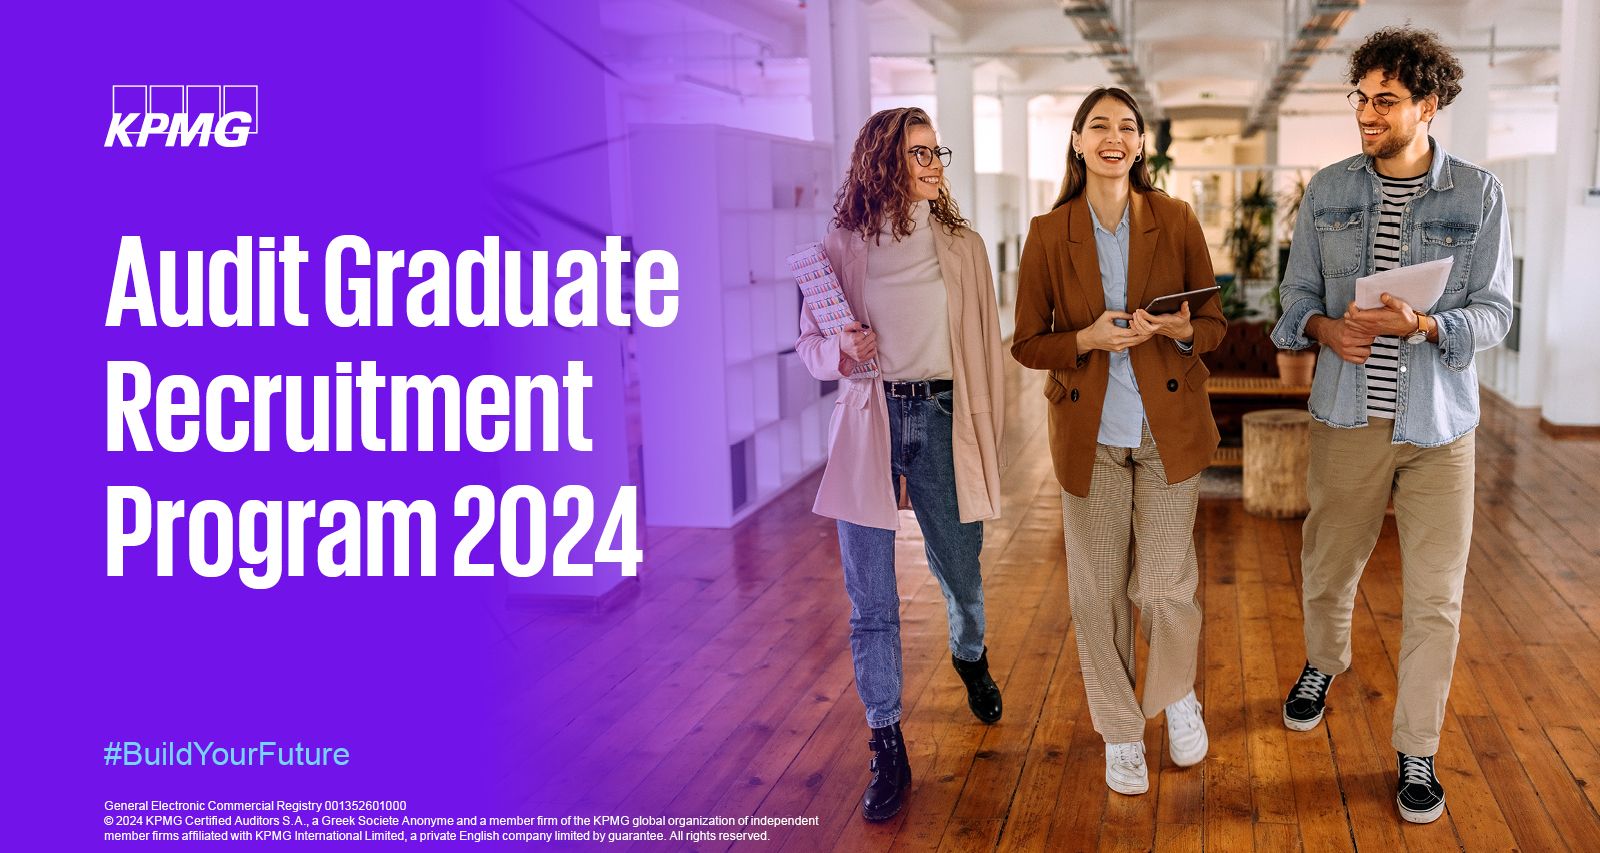 audit graduate recruitment program 2024 teaser banner